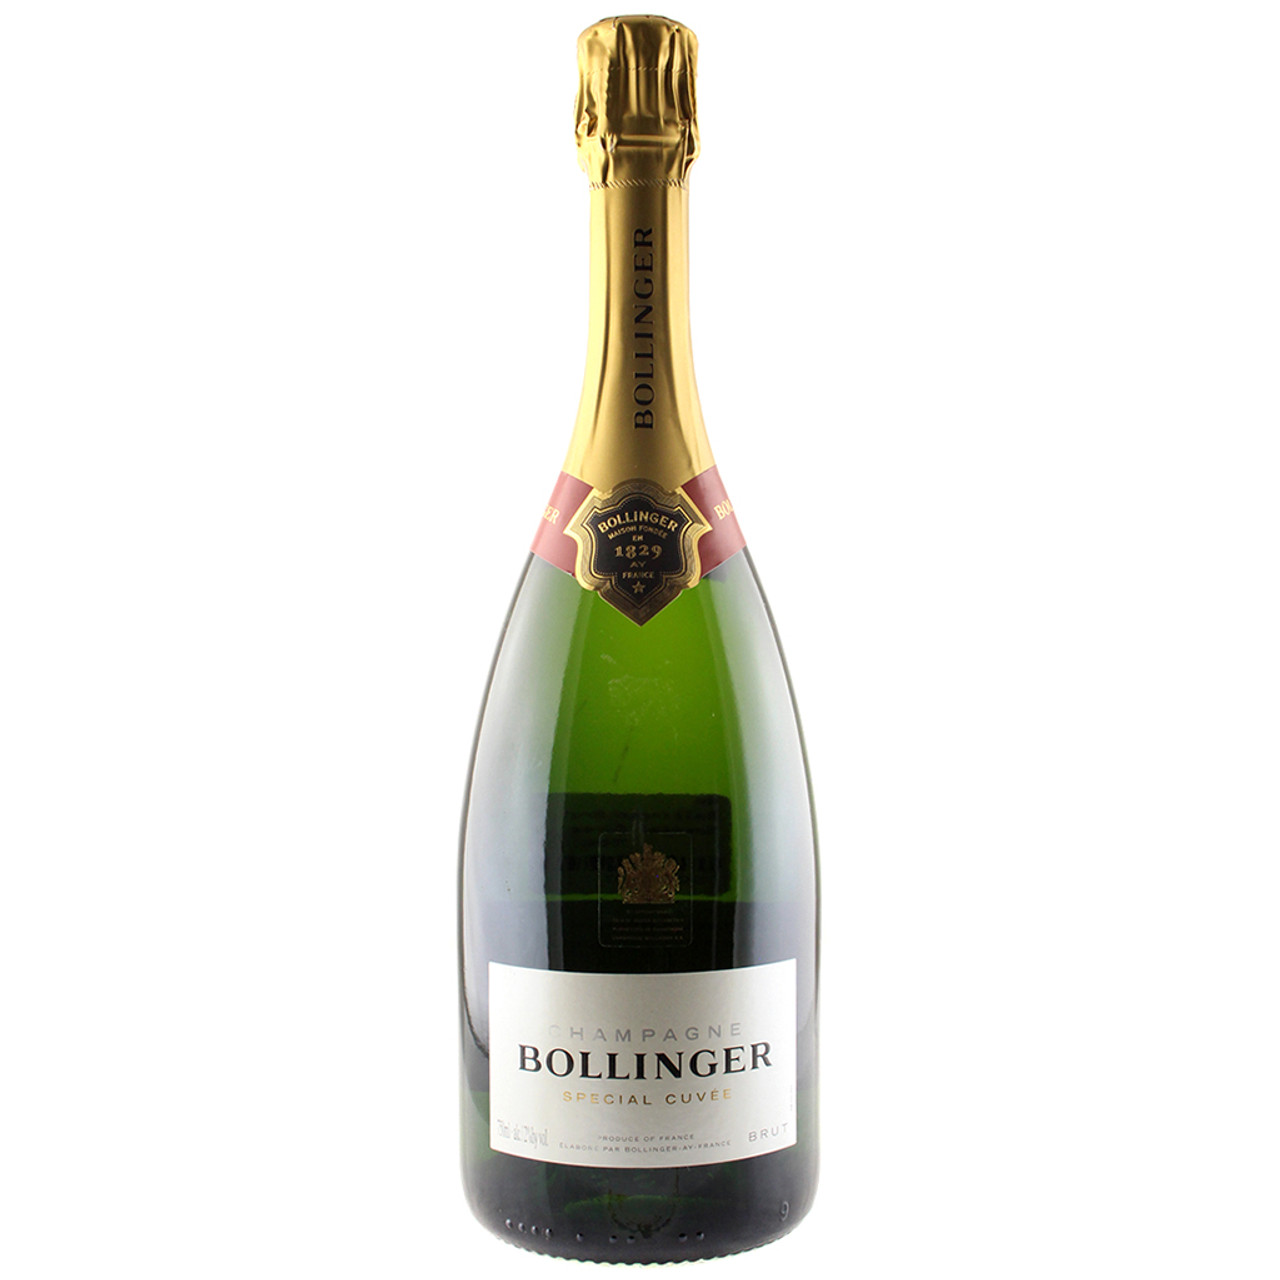 Шампанское мастер. Bollinger Brut. Bollinger шампанское. Bollinger Special Cuvee Brut Champagne купить в Москве 2018 года.